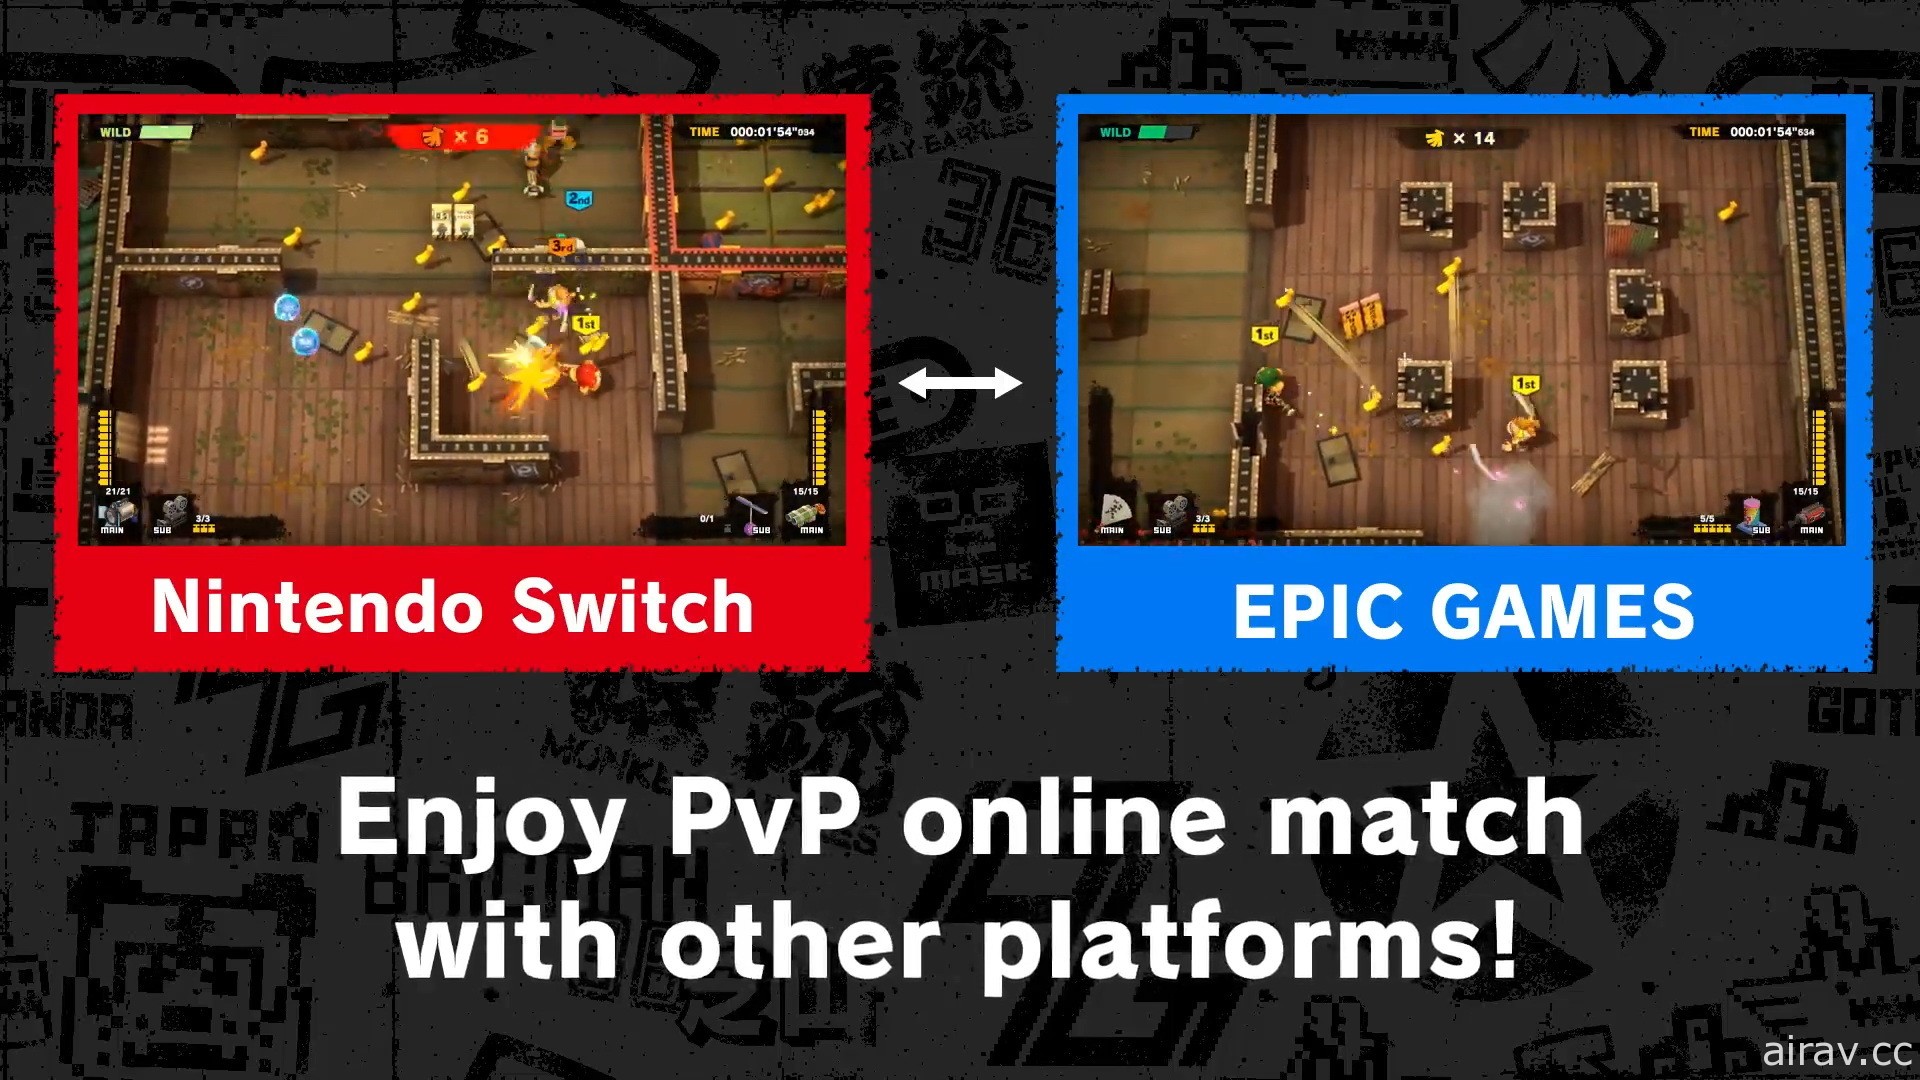 动作射击游戏《猴子桶战》将登陆 PC 平台 支援跨平台 PVP 对战